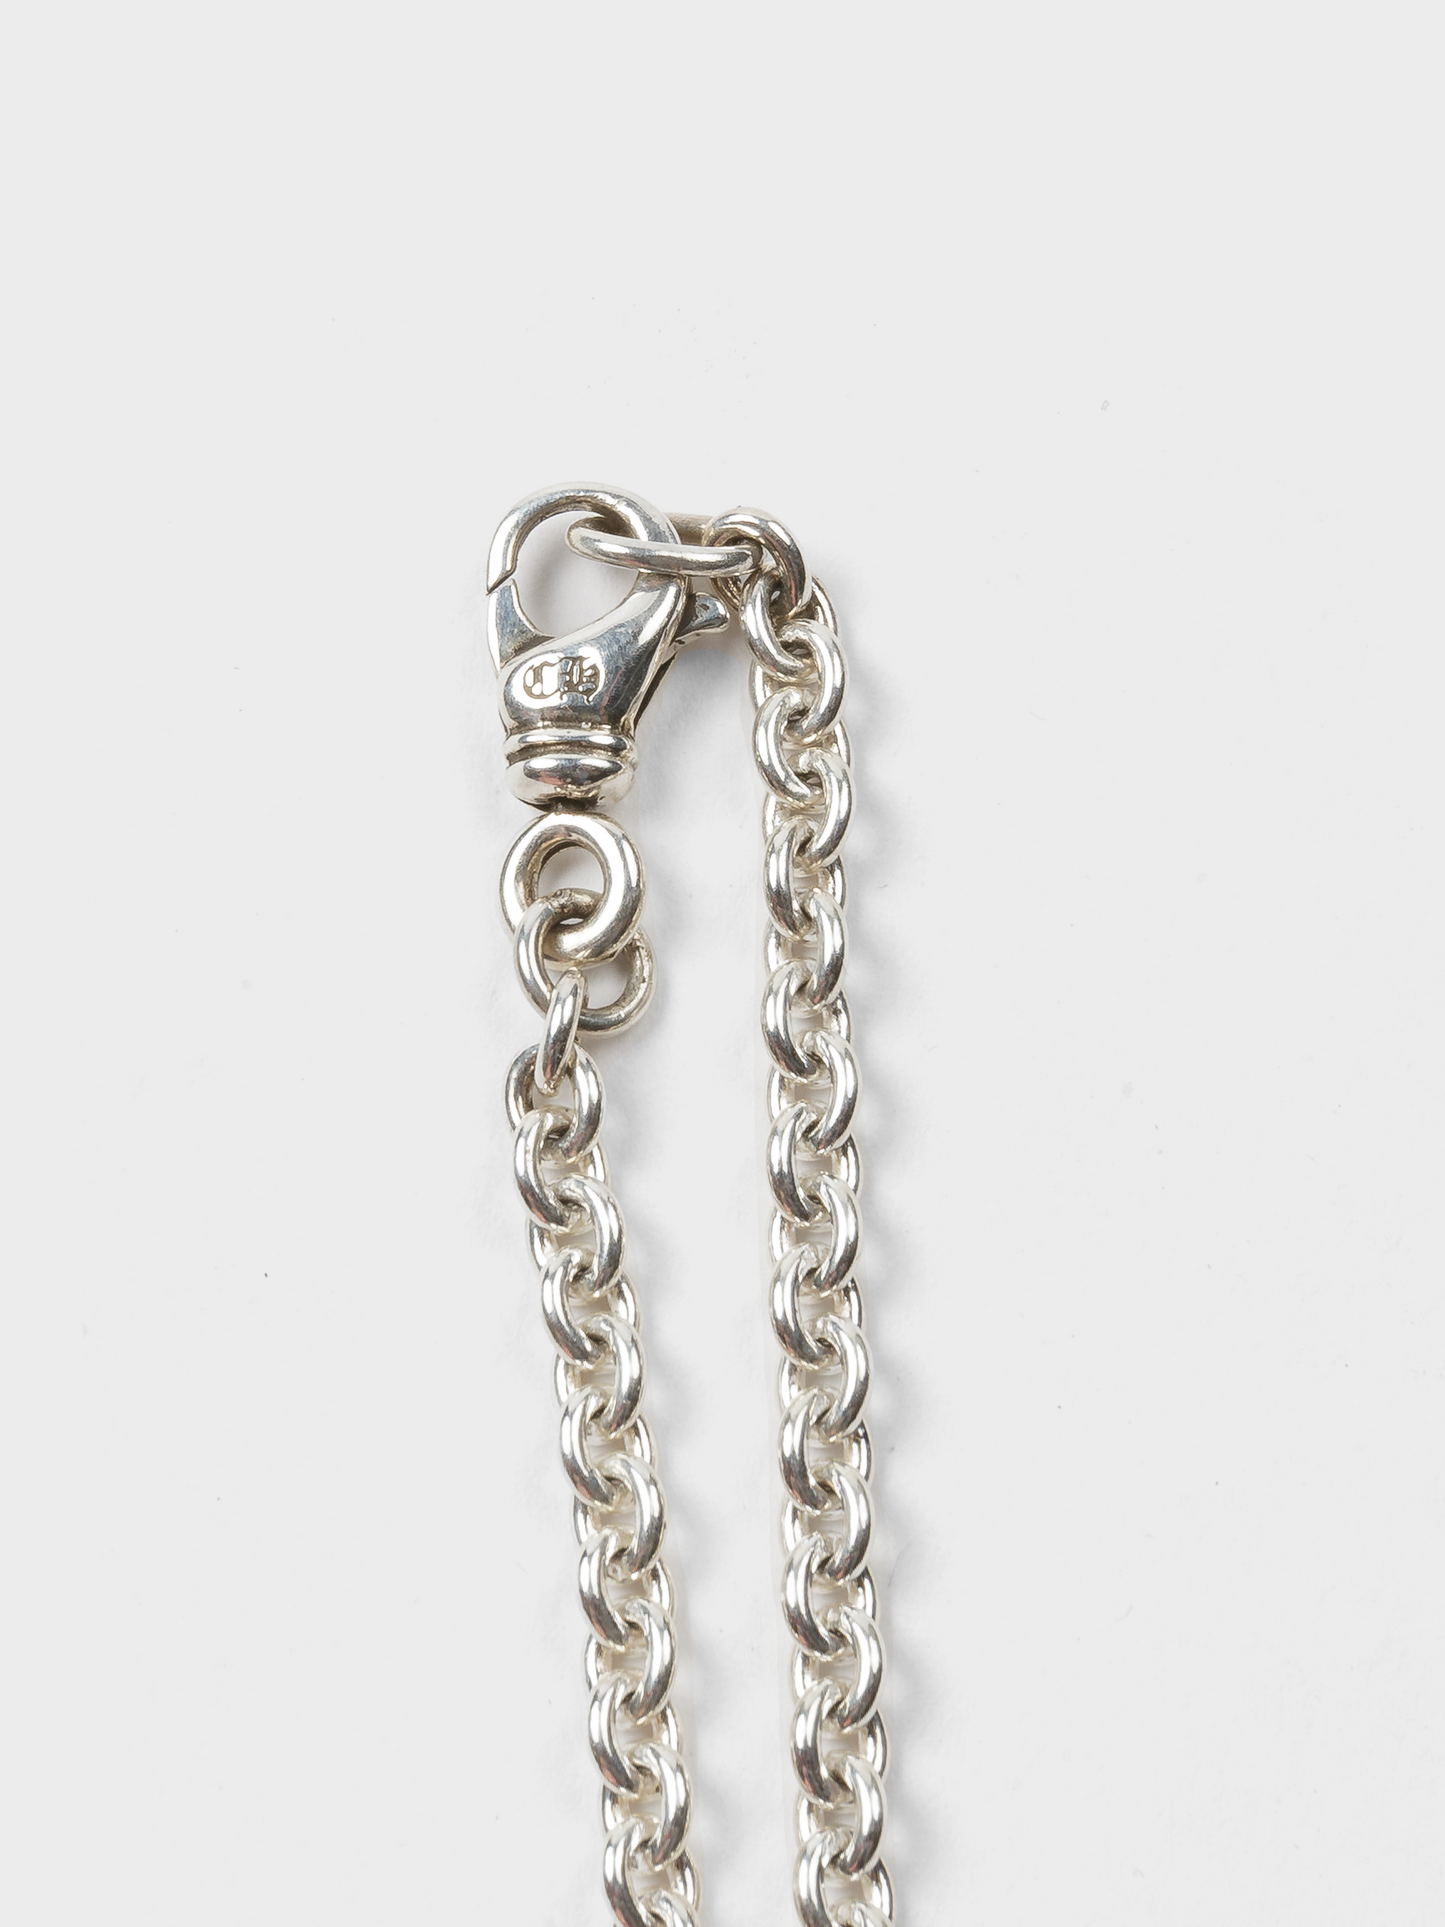 NE Chain Necklace - Groupie